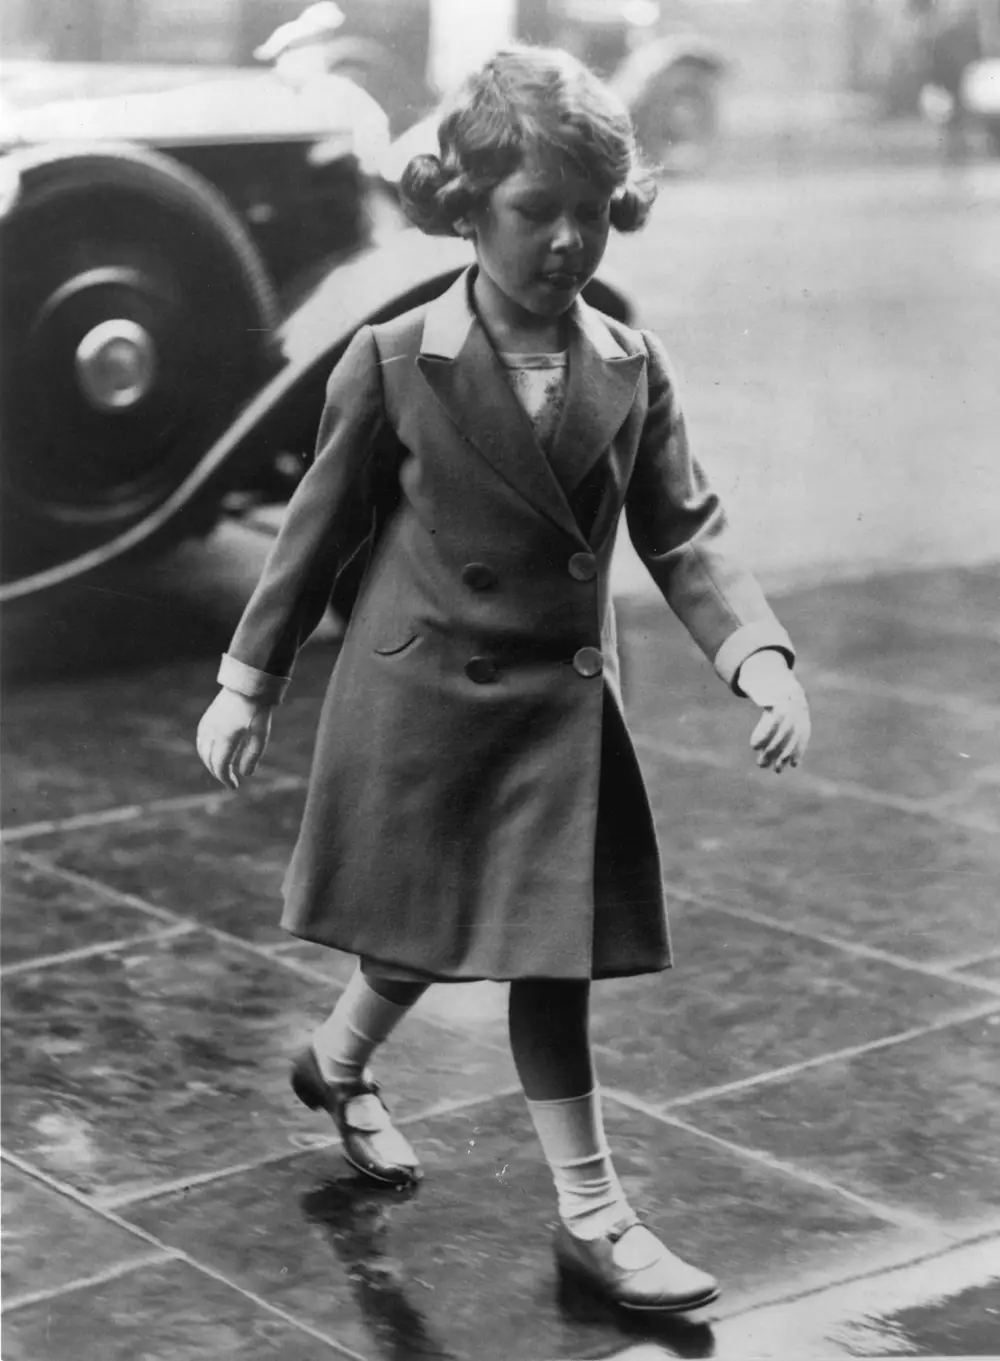 พ.ศ. 2475/ค.ศ. 1932: เจ้าหญิงน้อยฝ่าสายฝนไปชมการแข่งขันกีฬา "Royal Tournament" ณ โอลิมเปีย (Olympia) ในกรุงลอนดอนของอังกฤษ